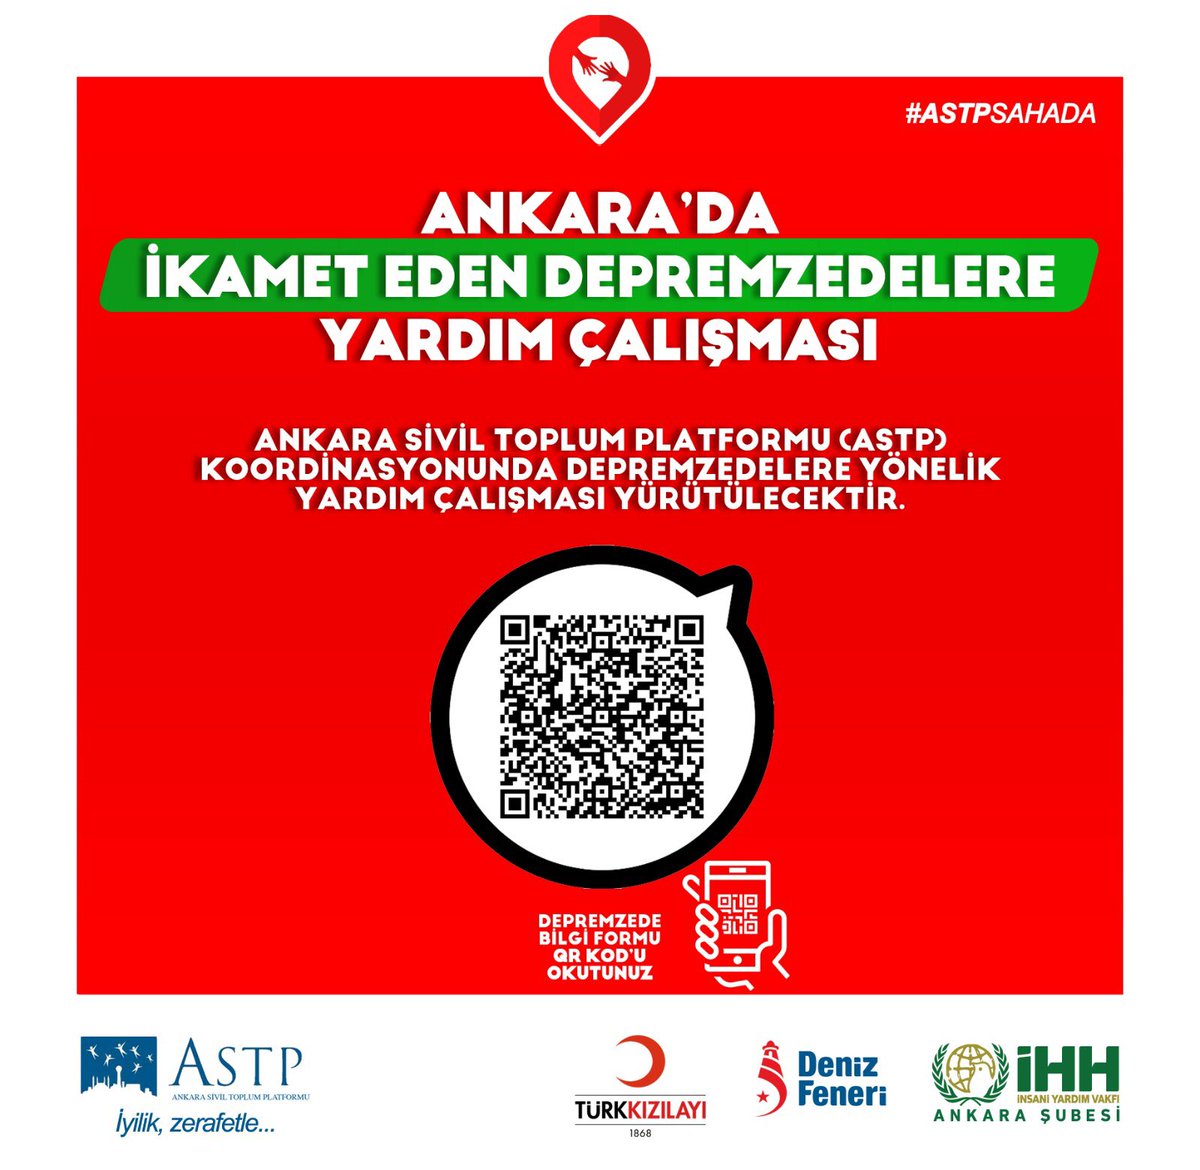 Ankara’da ki depremzedelere yardım ulaştırmak İçin formu doldurabilirsiniz.

Organizasyon ve hareket kabiliyeti yüksek Yardım kuruluşlarına yardımda bulunalım. #AFAD #Kızılay #Umke #İHH #Denizfeneri #Astp #Astpsahada #QRCode